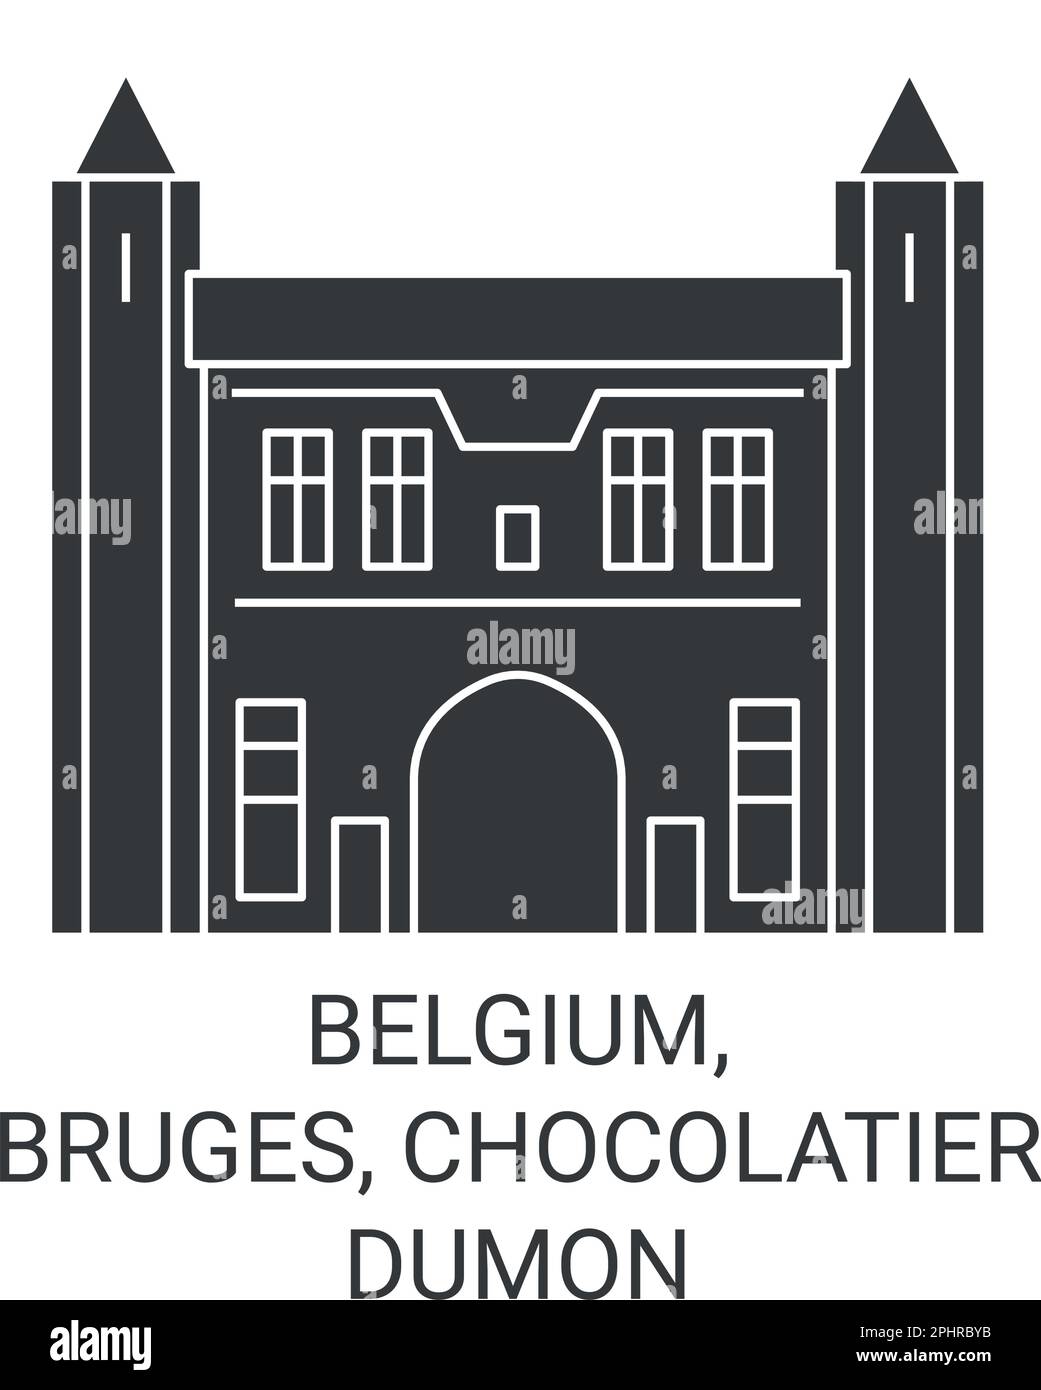 Belgium, Bruges, Chocolatier Dumon travel landmark vector illustration Stock Vector